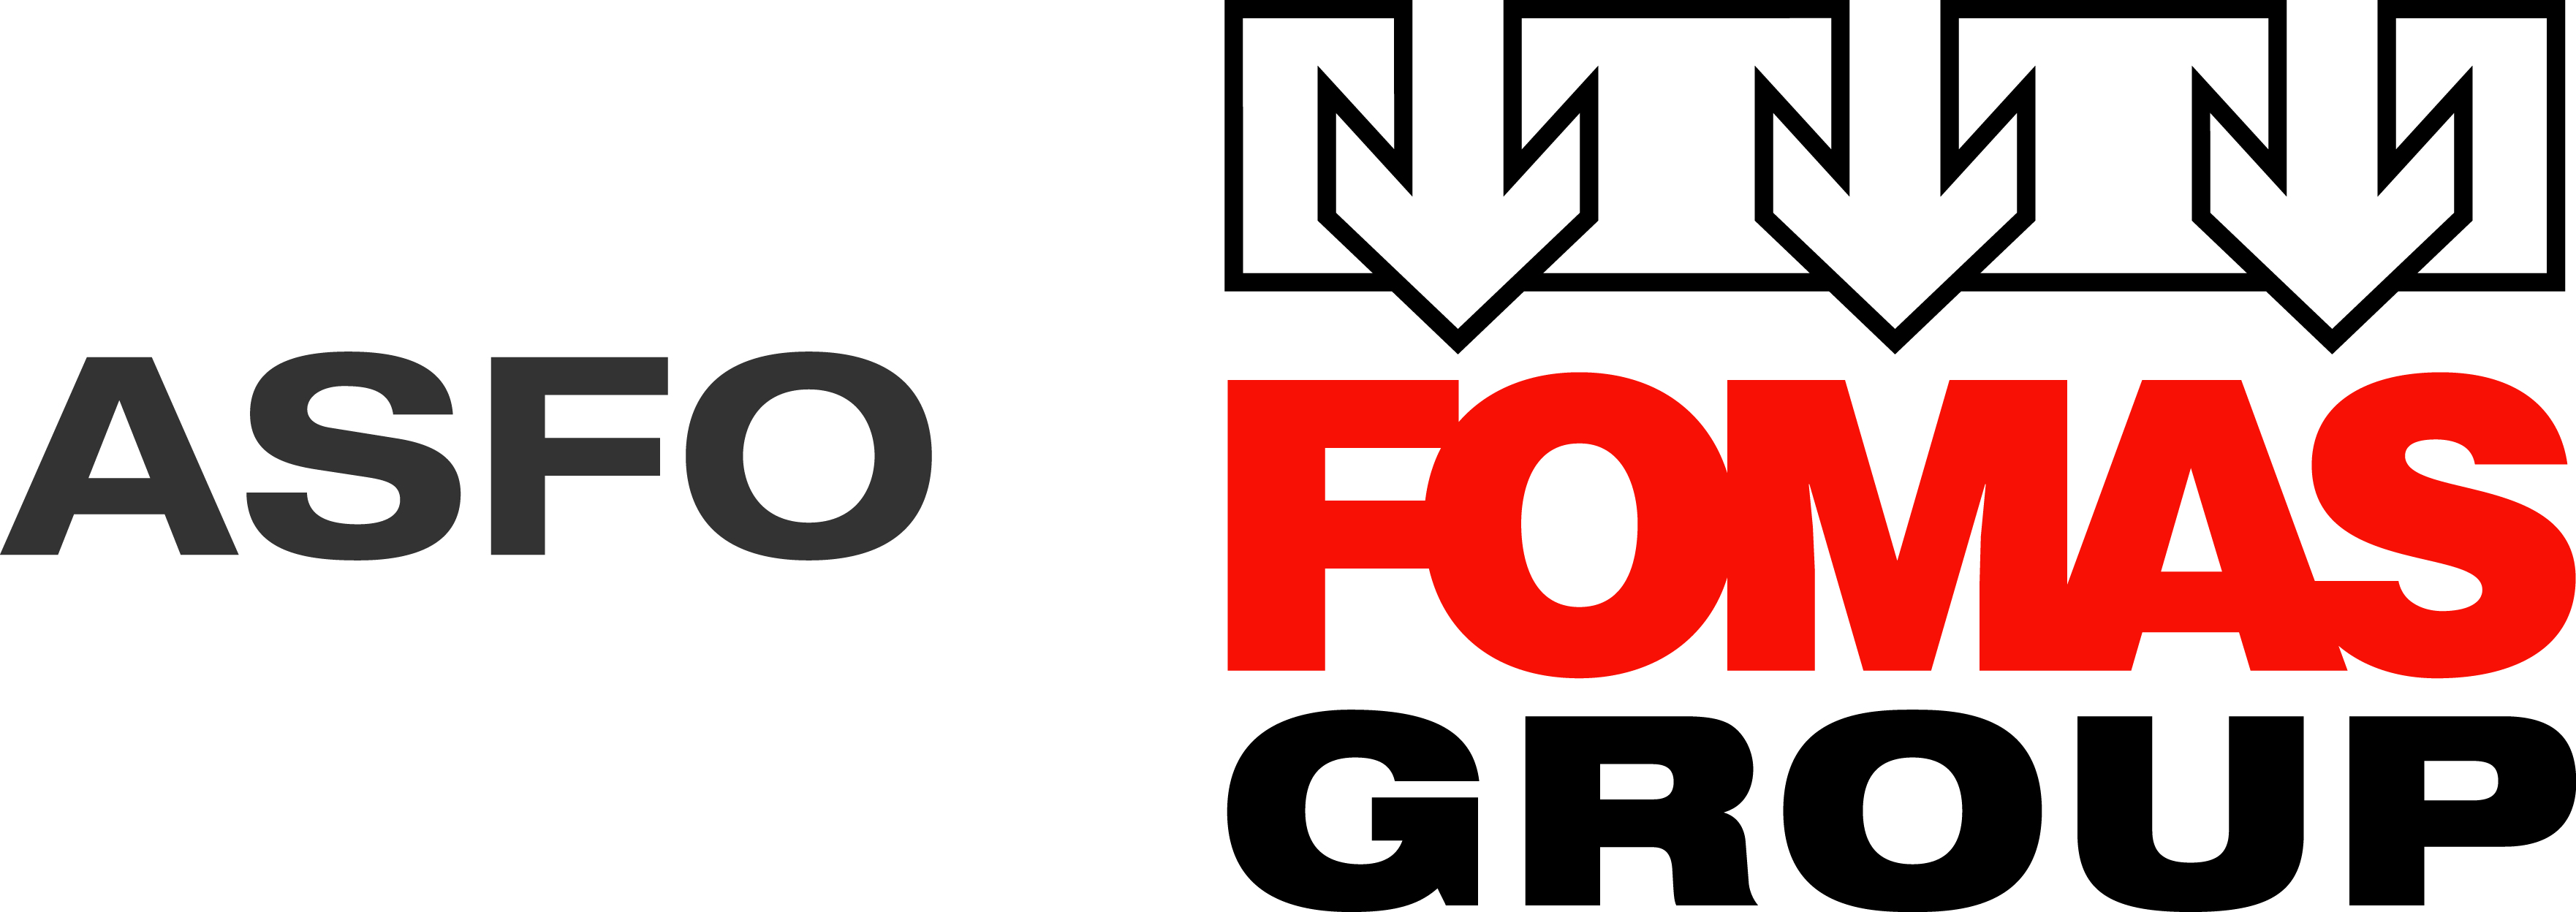 FormasGroup_Asfo_logo